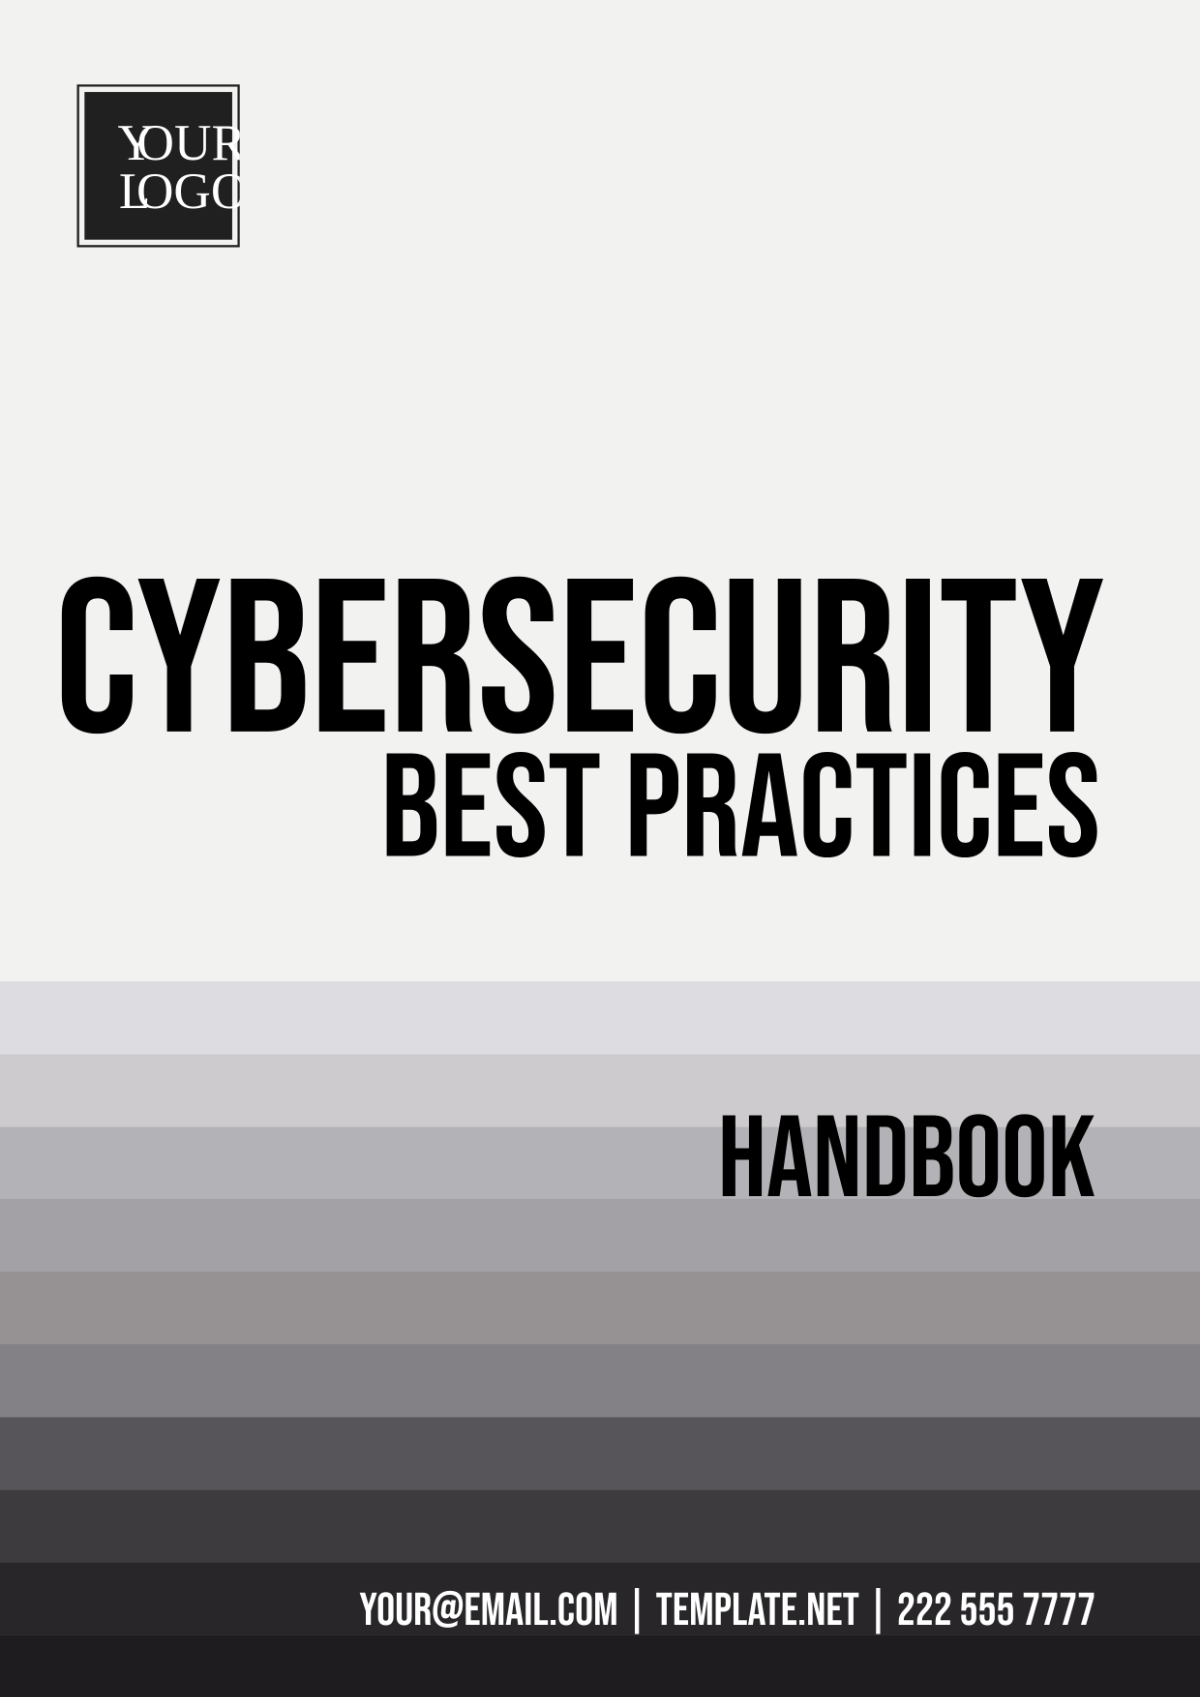 Free Cybersecurity Best Practices Handbook Template